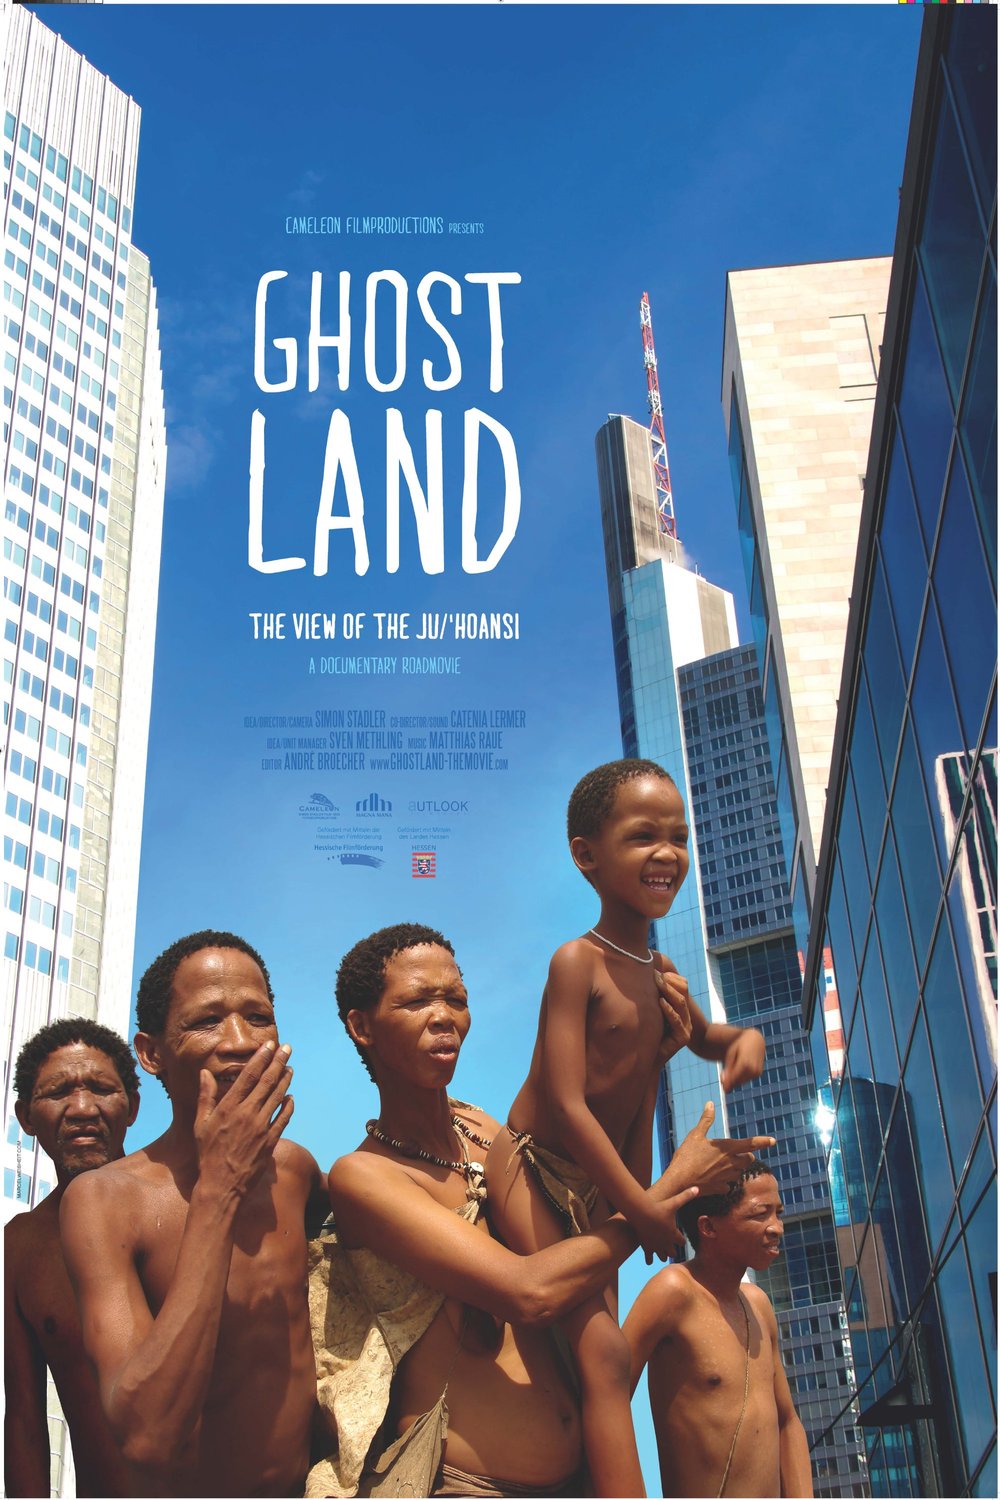 L'affiche du film Ghostland: The View of the Ju'Hoansi